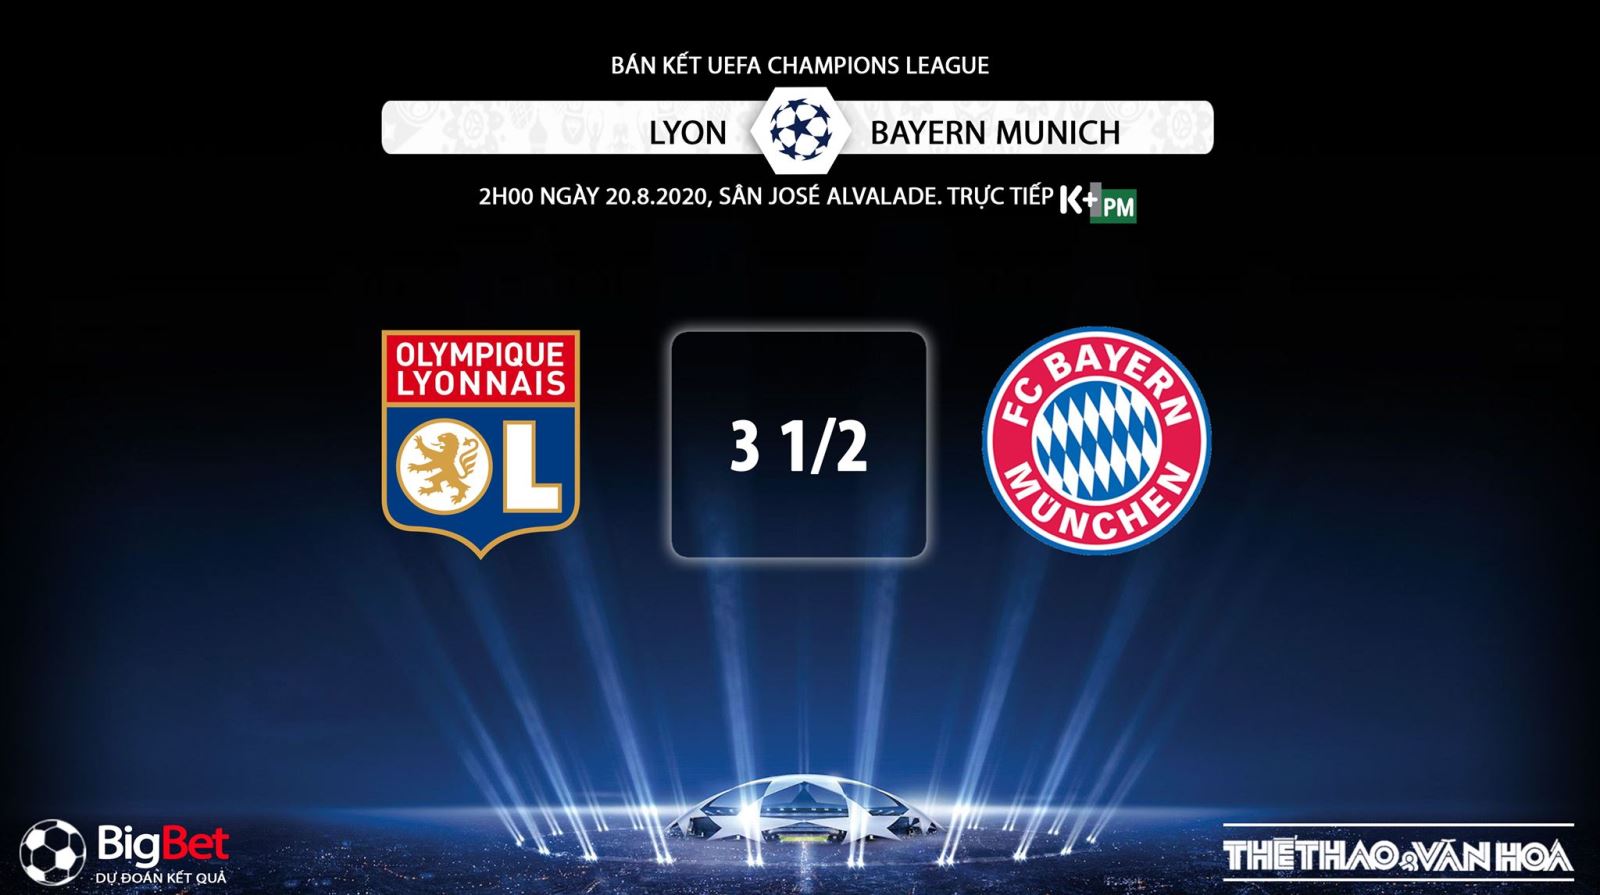 Keo nha cai, nhận định kết quả, Lyon vs Bayern Munich, Bán kết cúp C1 châu Âu, Bán kết Champions League, K+, K+PM trực tiếp bóng đá, Kèo bóng đá Bayern, Kèo Bayern Munich